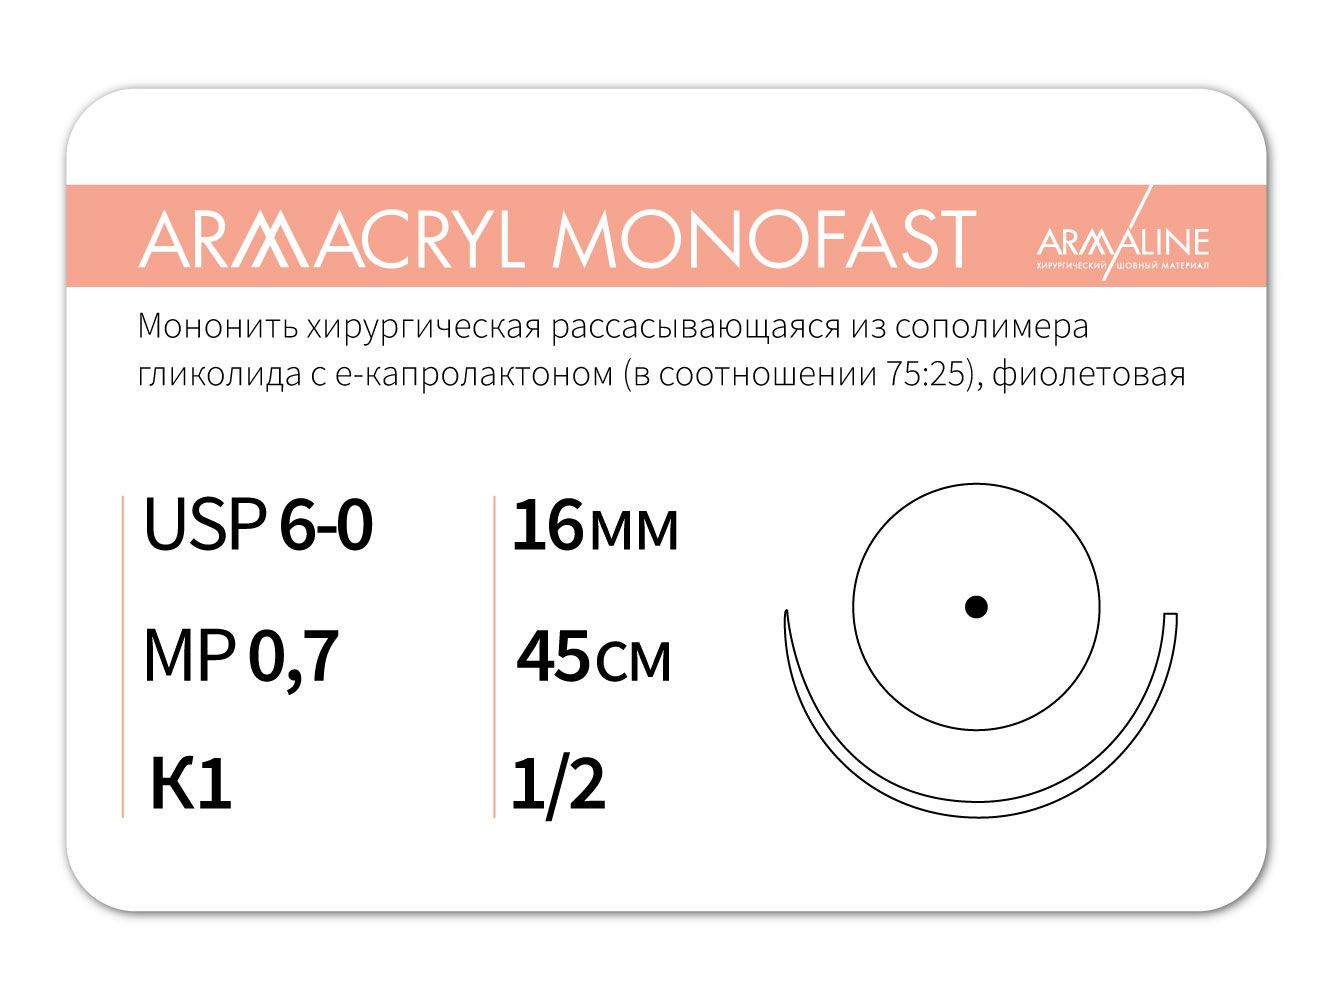 ARMACRYL MONOFAST/Армакрил монофаст (5-0) 45 см - материал хирургический шовный стерильный с атравматической колющей иглой